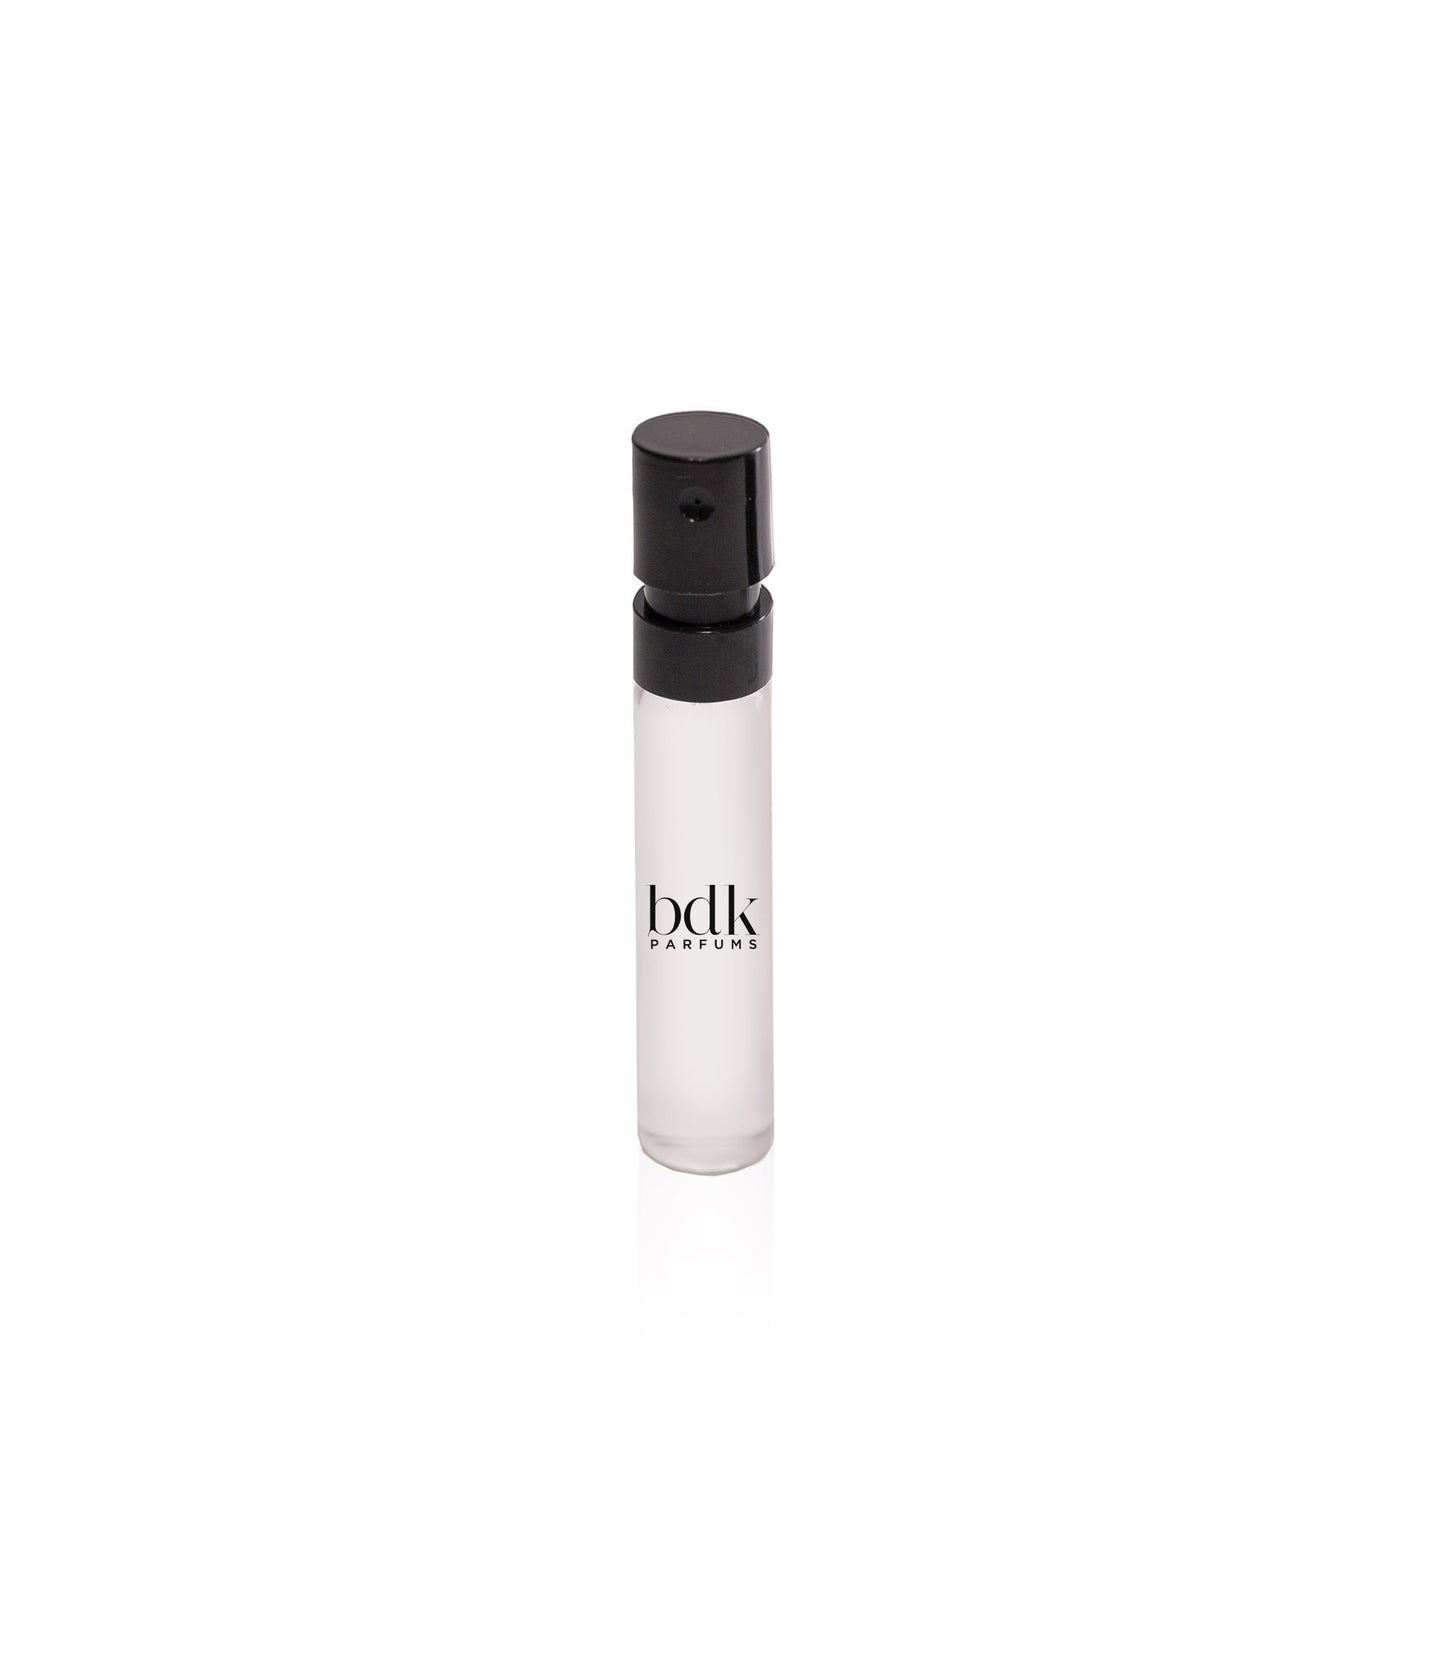 BDK - Gris Charnel Extrait for Unisex High Quality - A++ BDK Premium  Perfume Oils